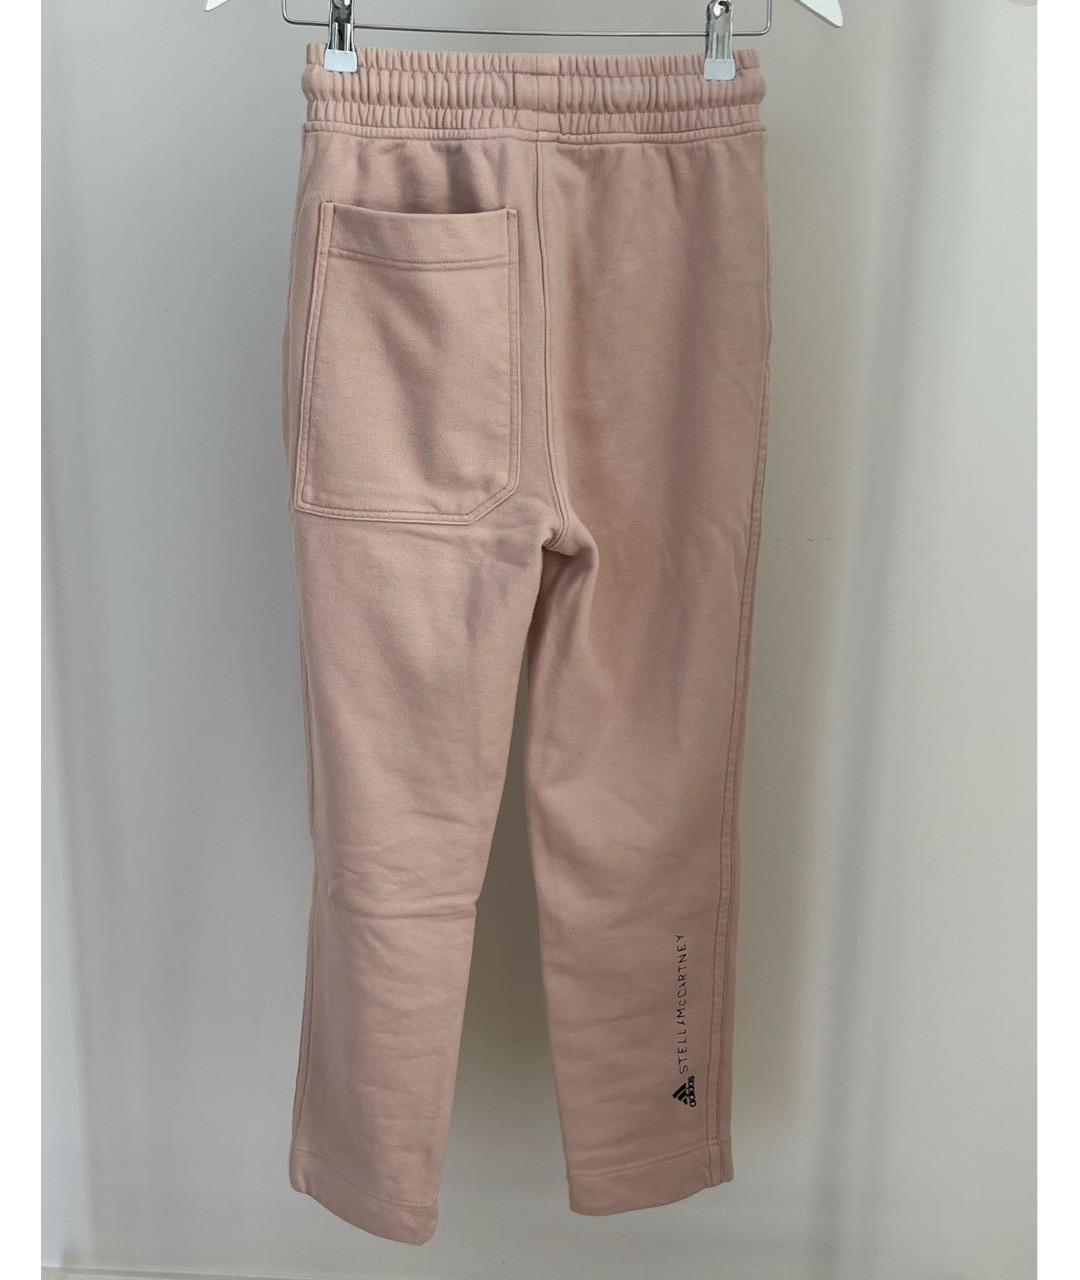 ADIDAS BY STELLA MCCARTNEY Розовые хлопковые спортивные брюки и шорты, фото 2